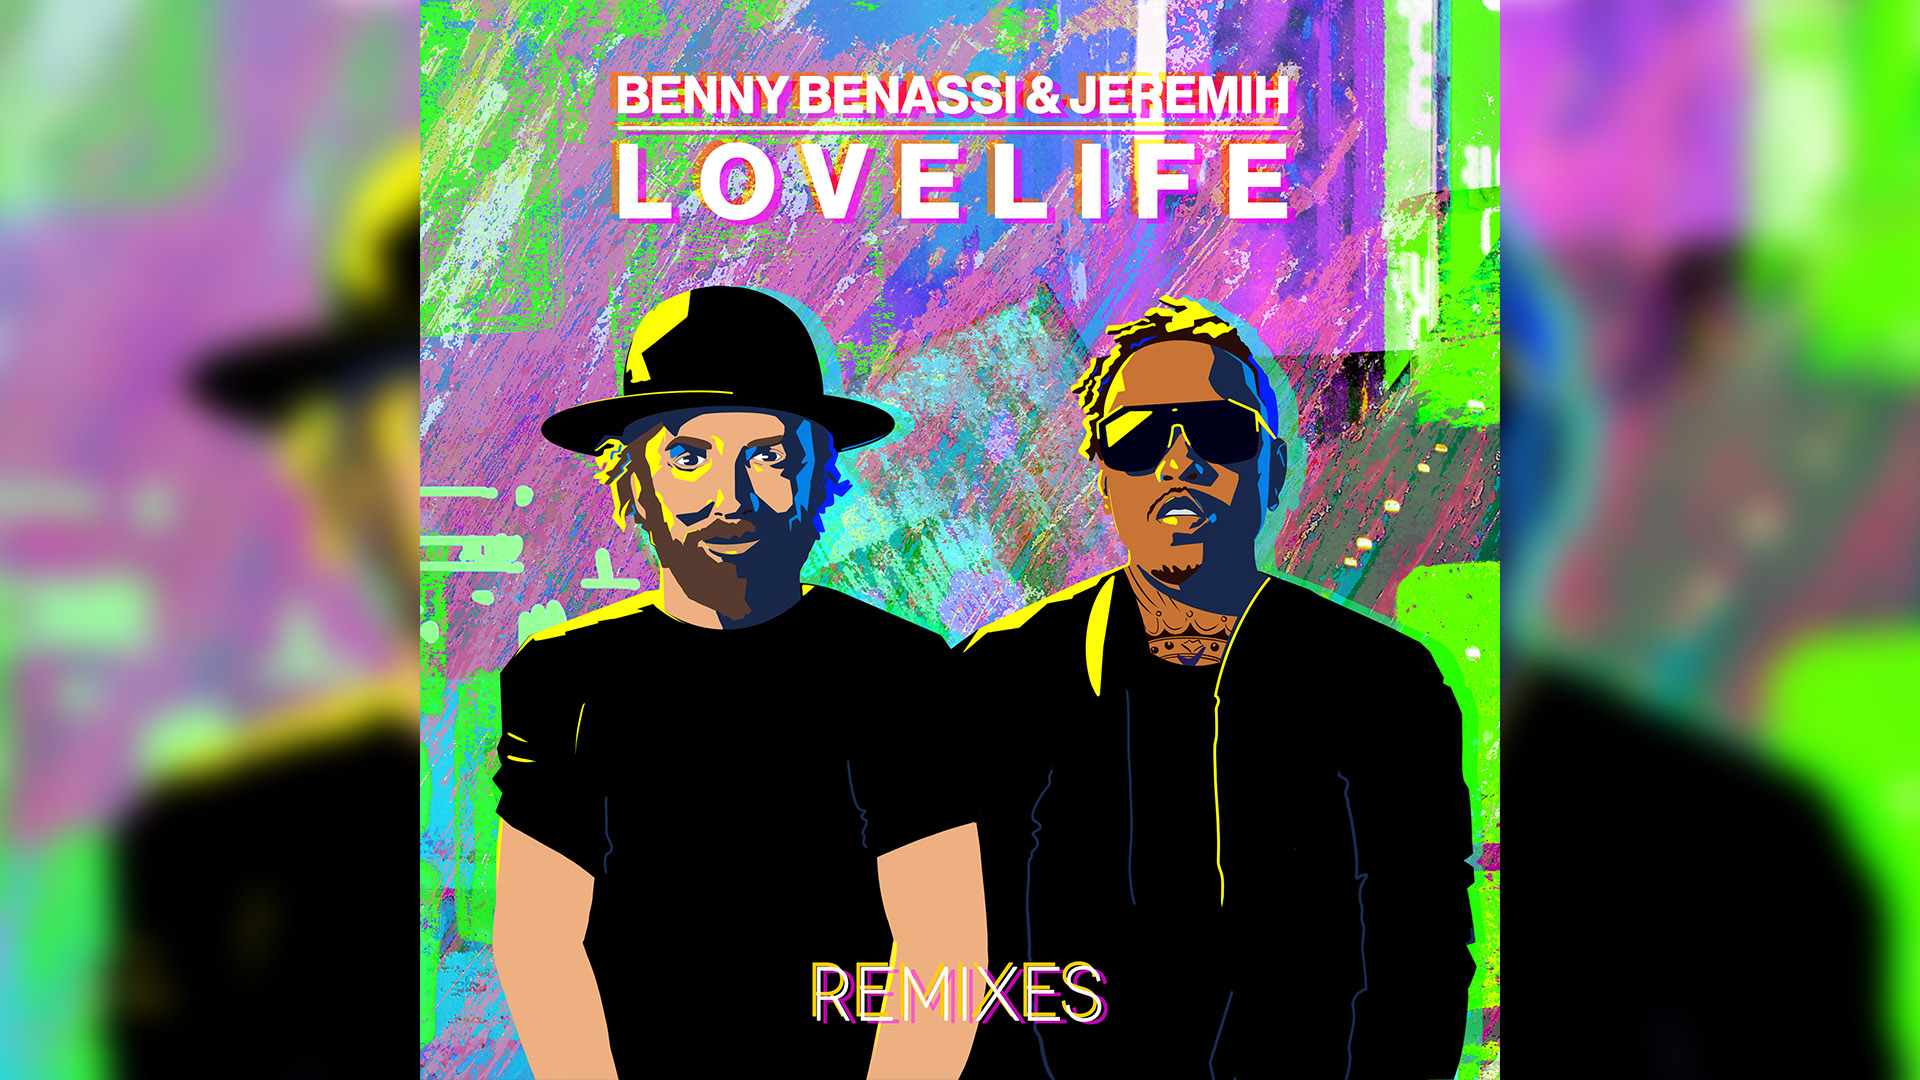 Lovelife Remixes